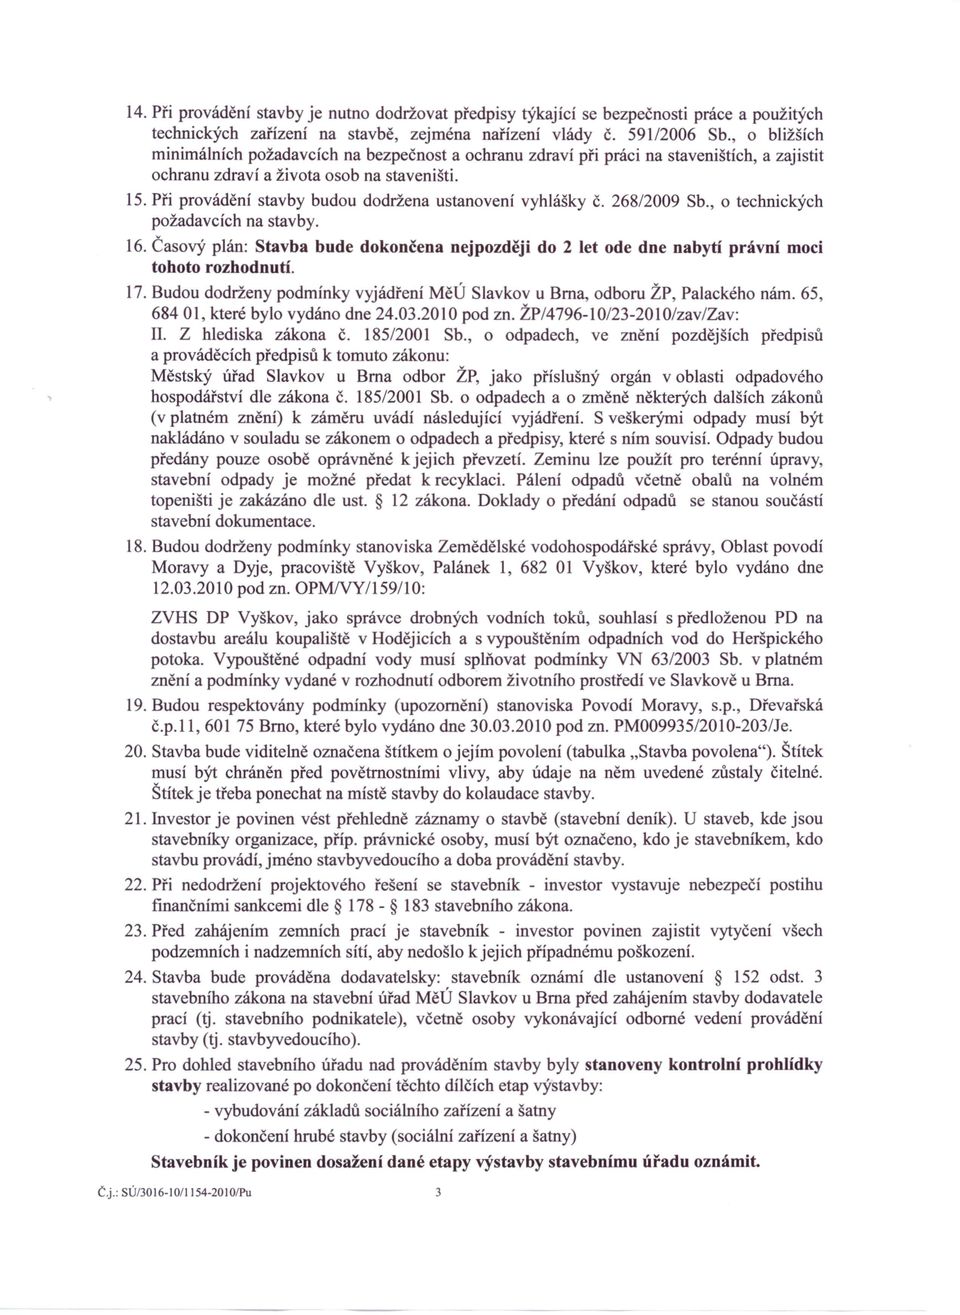 Při provádění stavby budou dodržena ustanovení vyhlášky č. 268/2009 Sb., o technických požadavcích na stavby. 16.